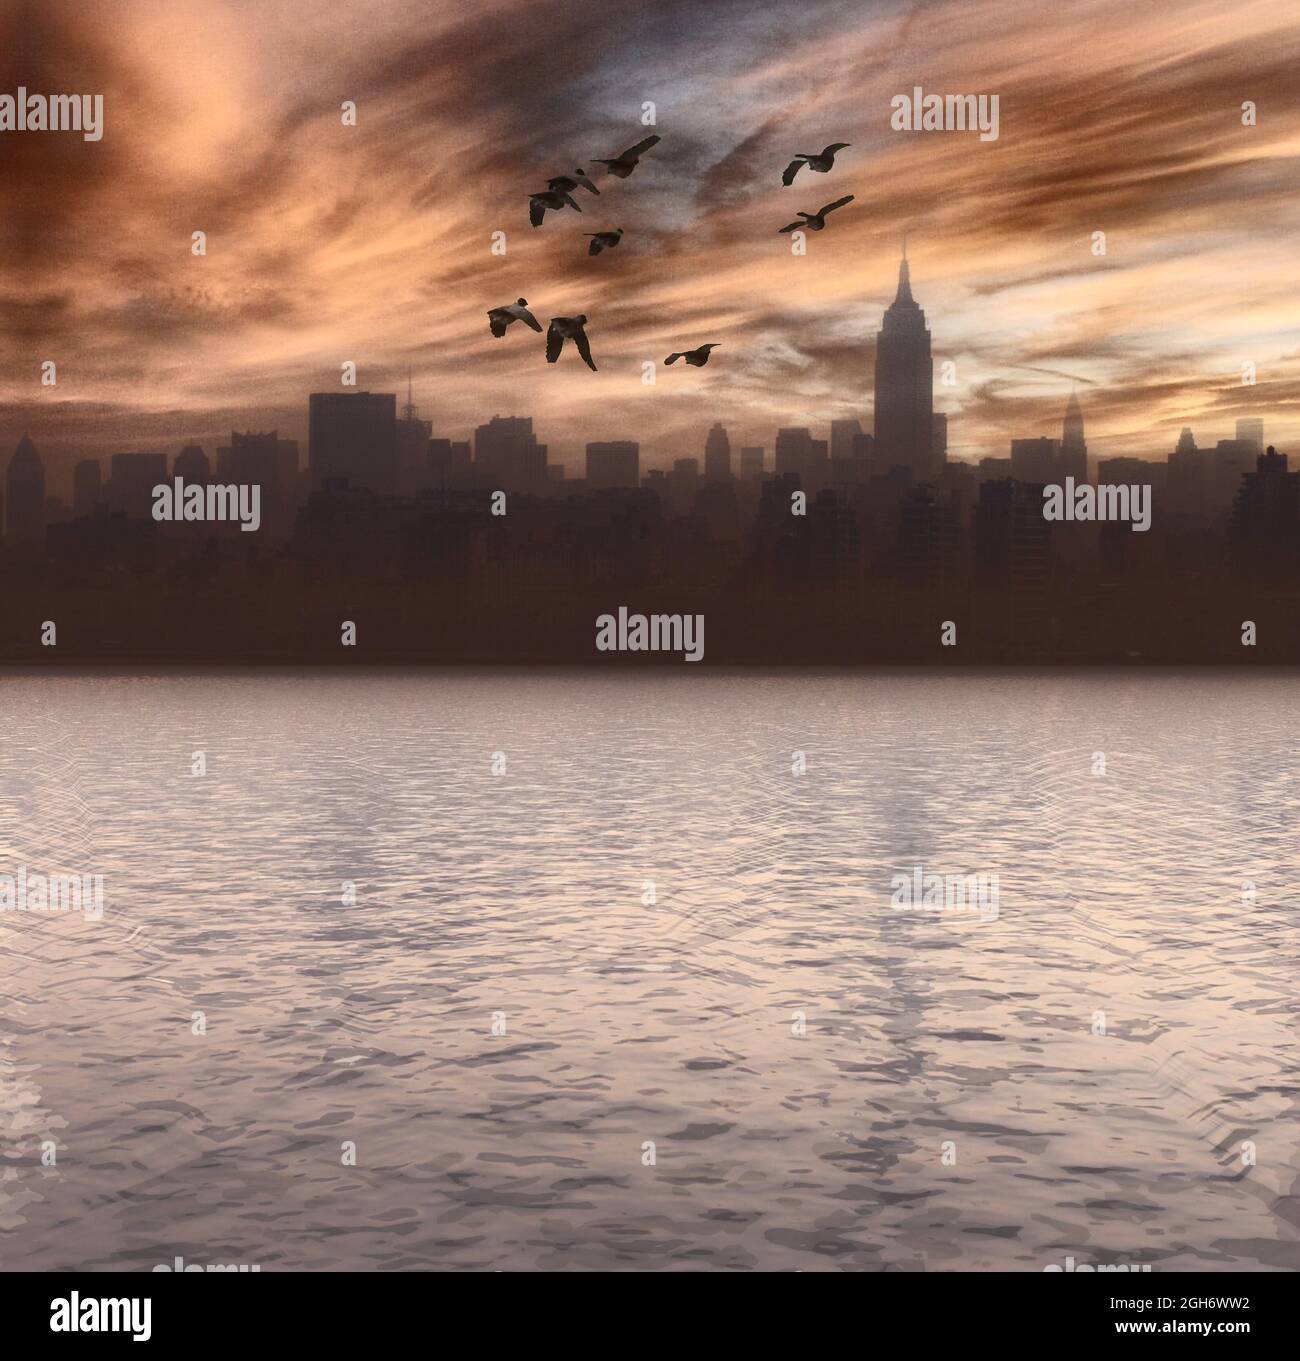 Lungomare della città di New York. Immagine panoramica. Il gregge di uccelli vola nel cielo. Rendering 3D Foto Stock